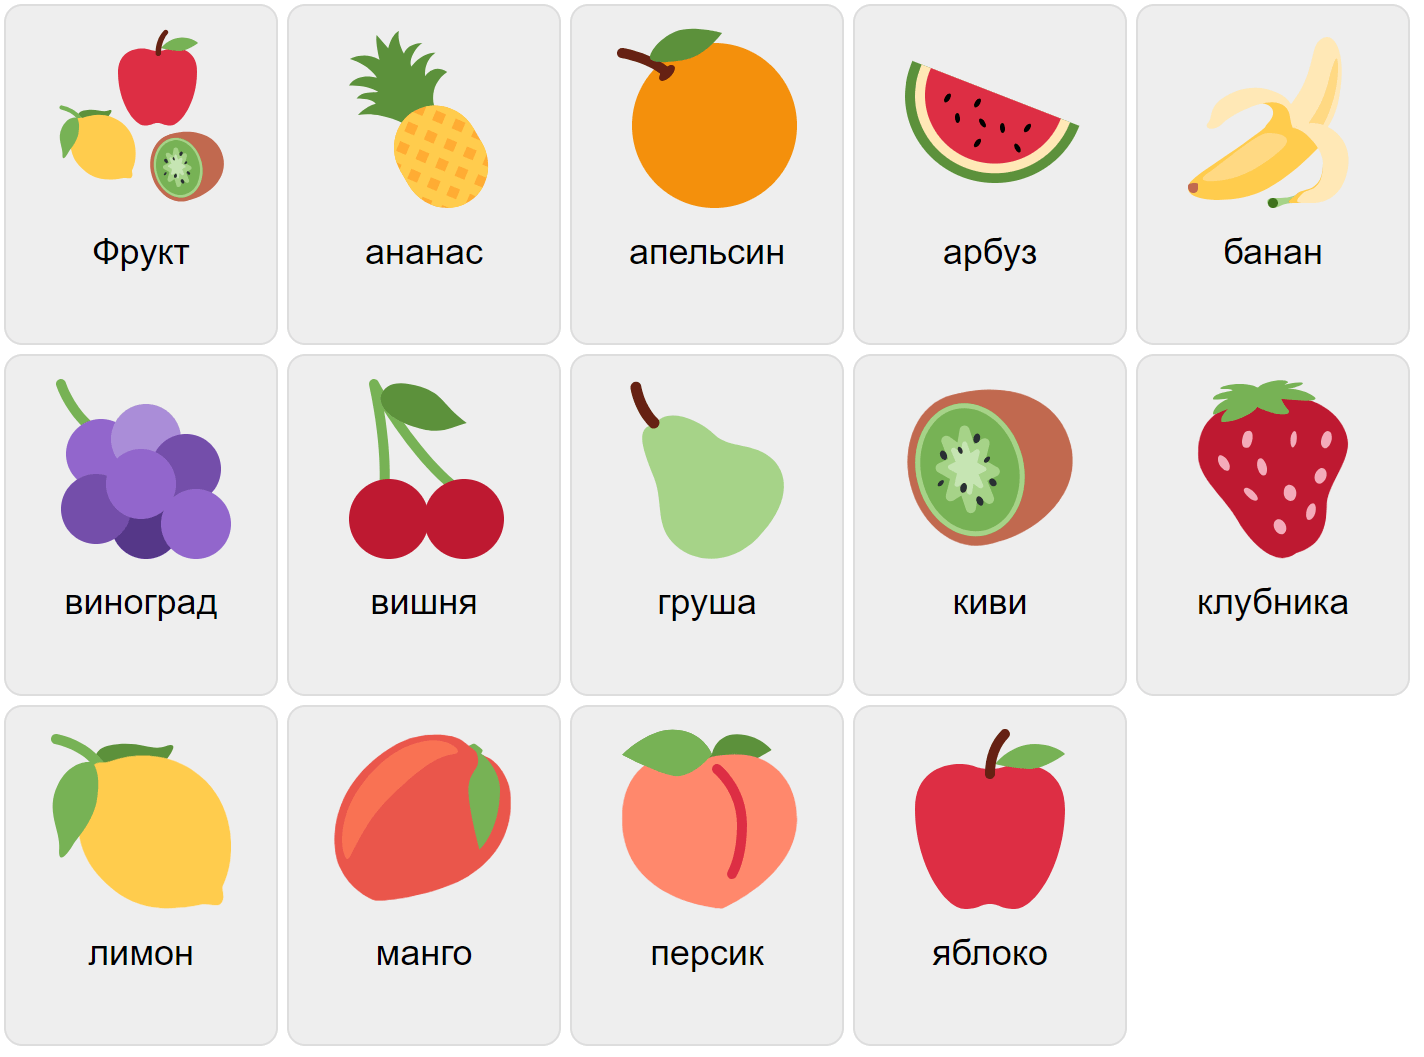 Frukter på ryska